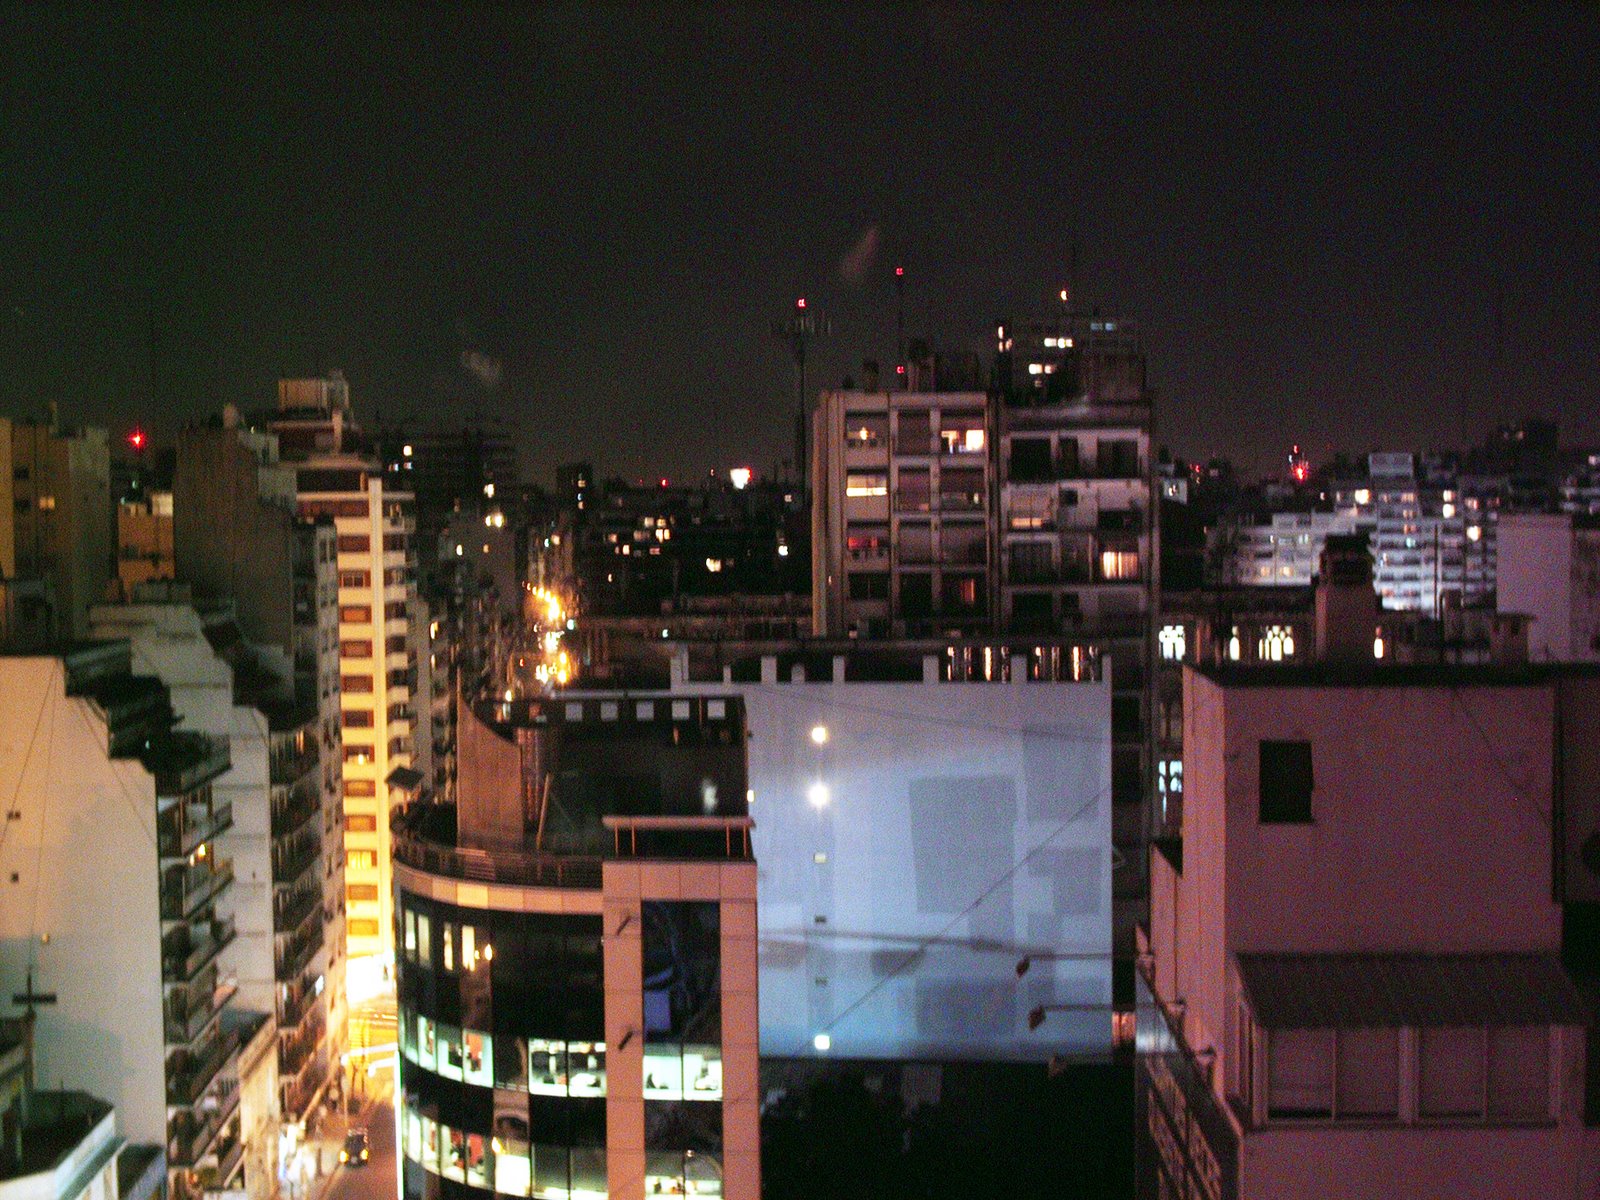 [City+at+night.jpg]